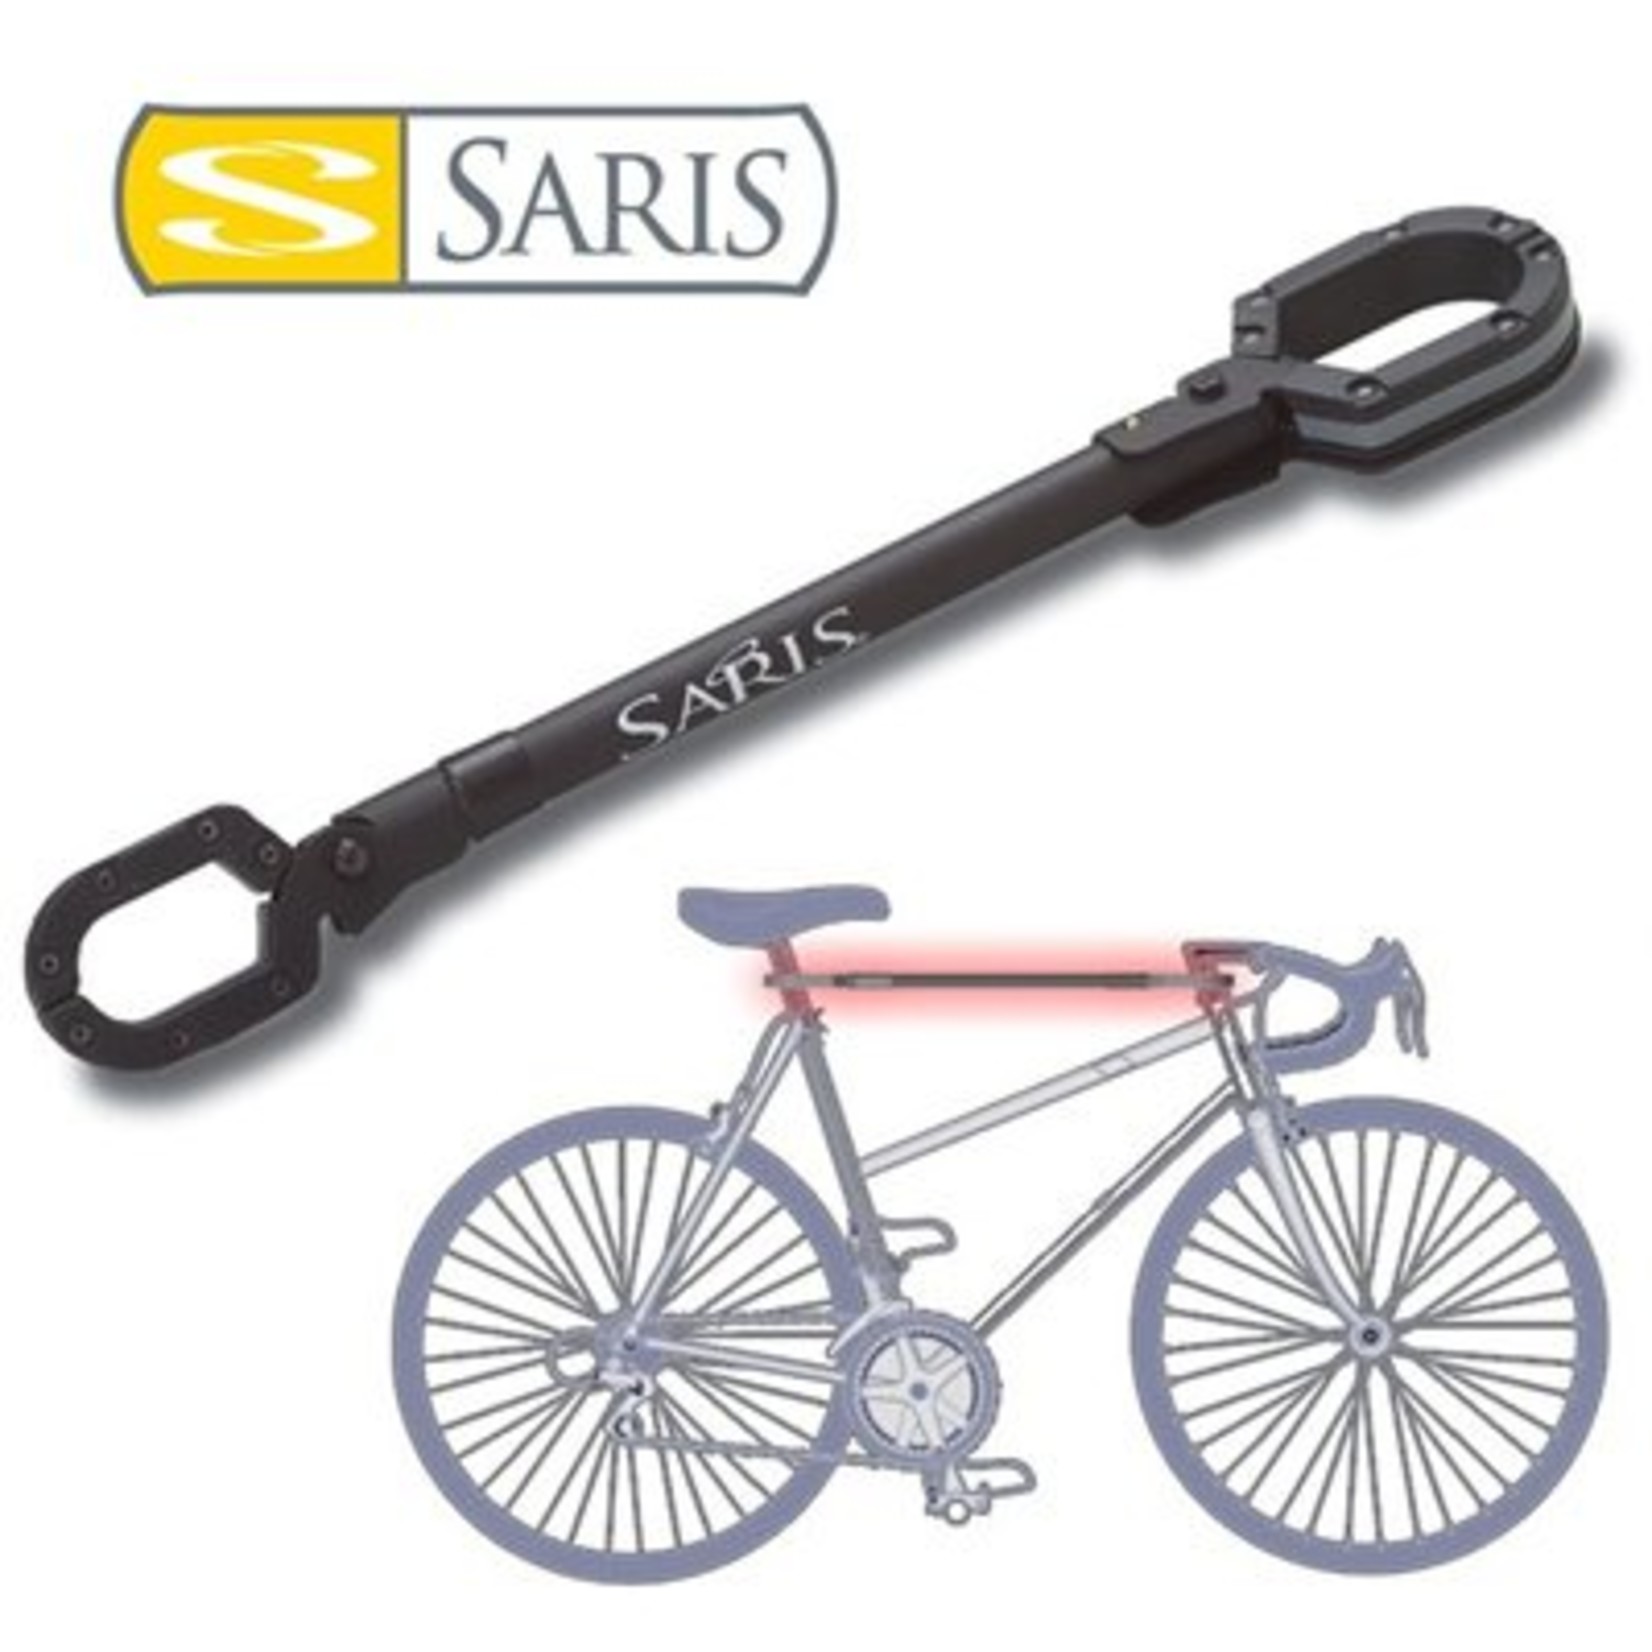 saris bones bike beam